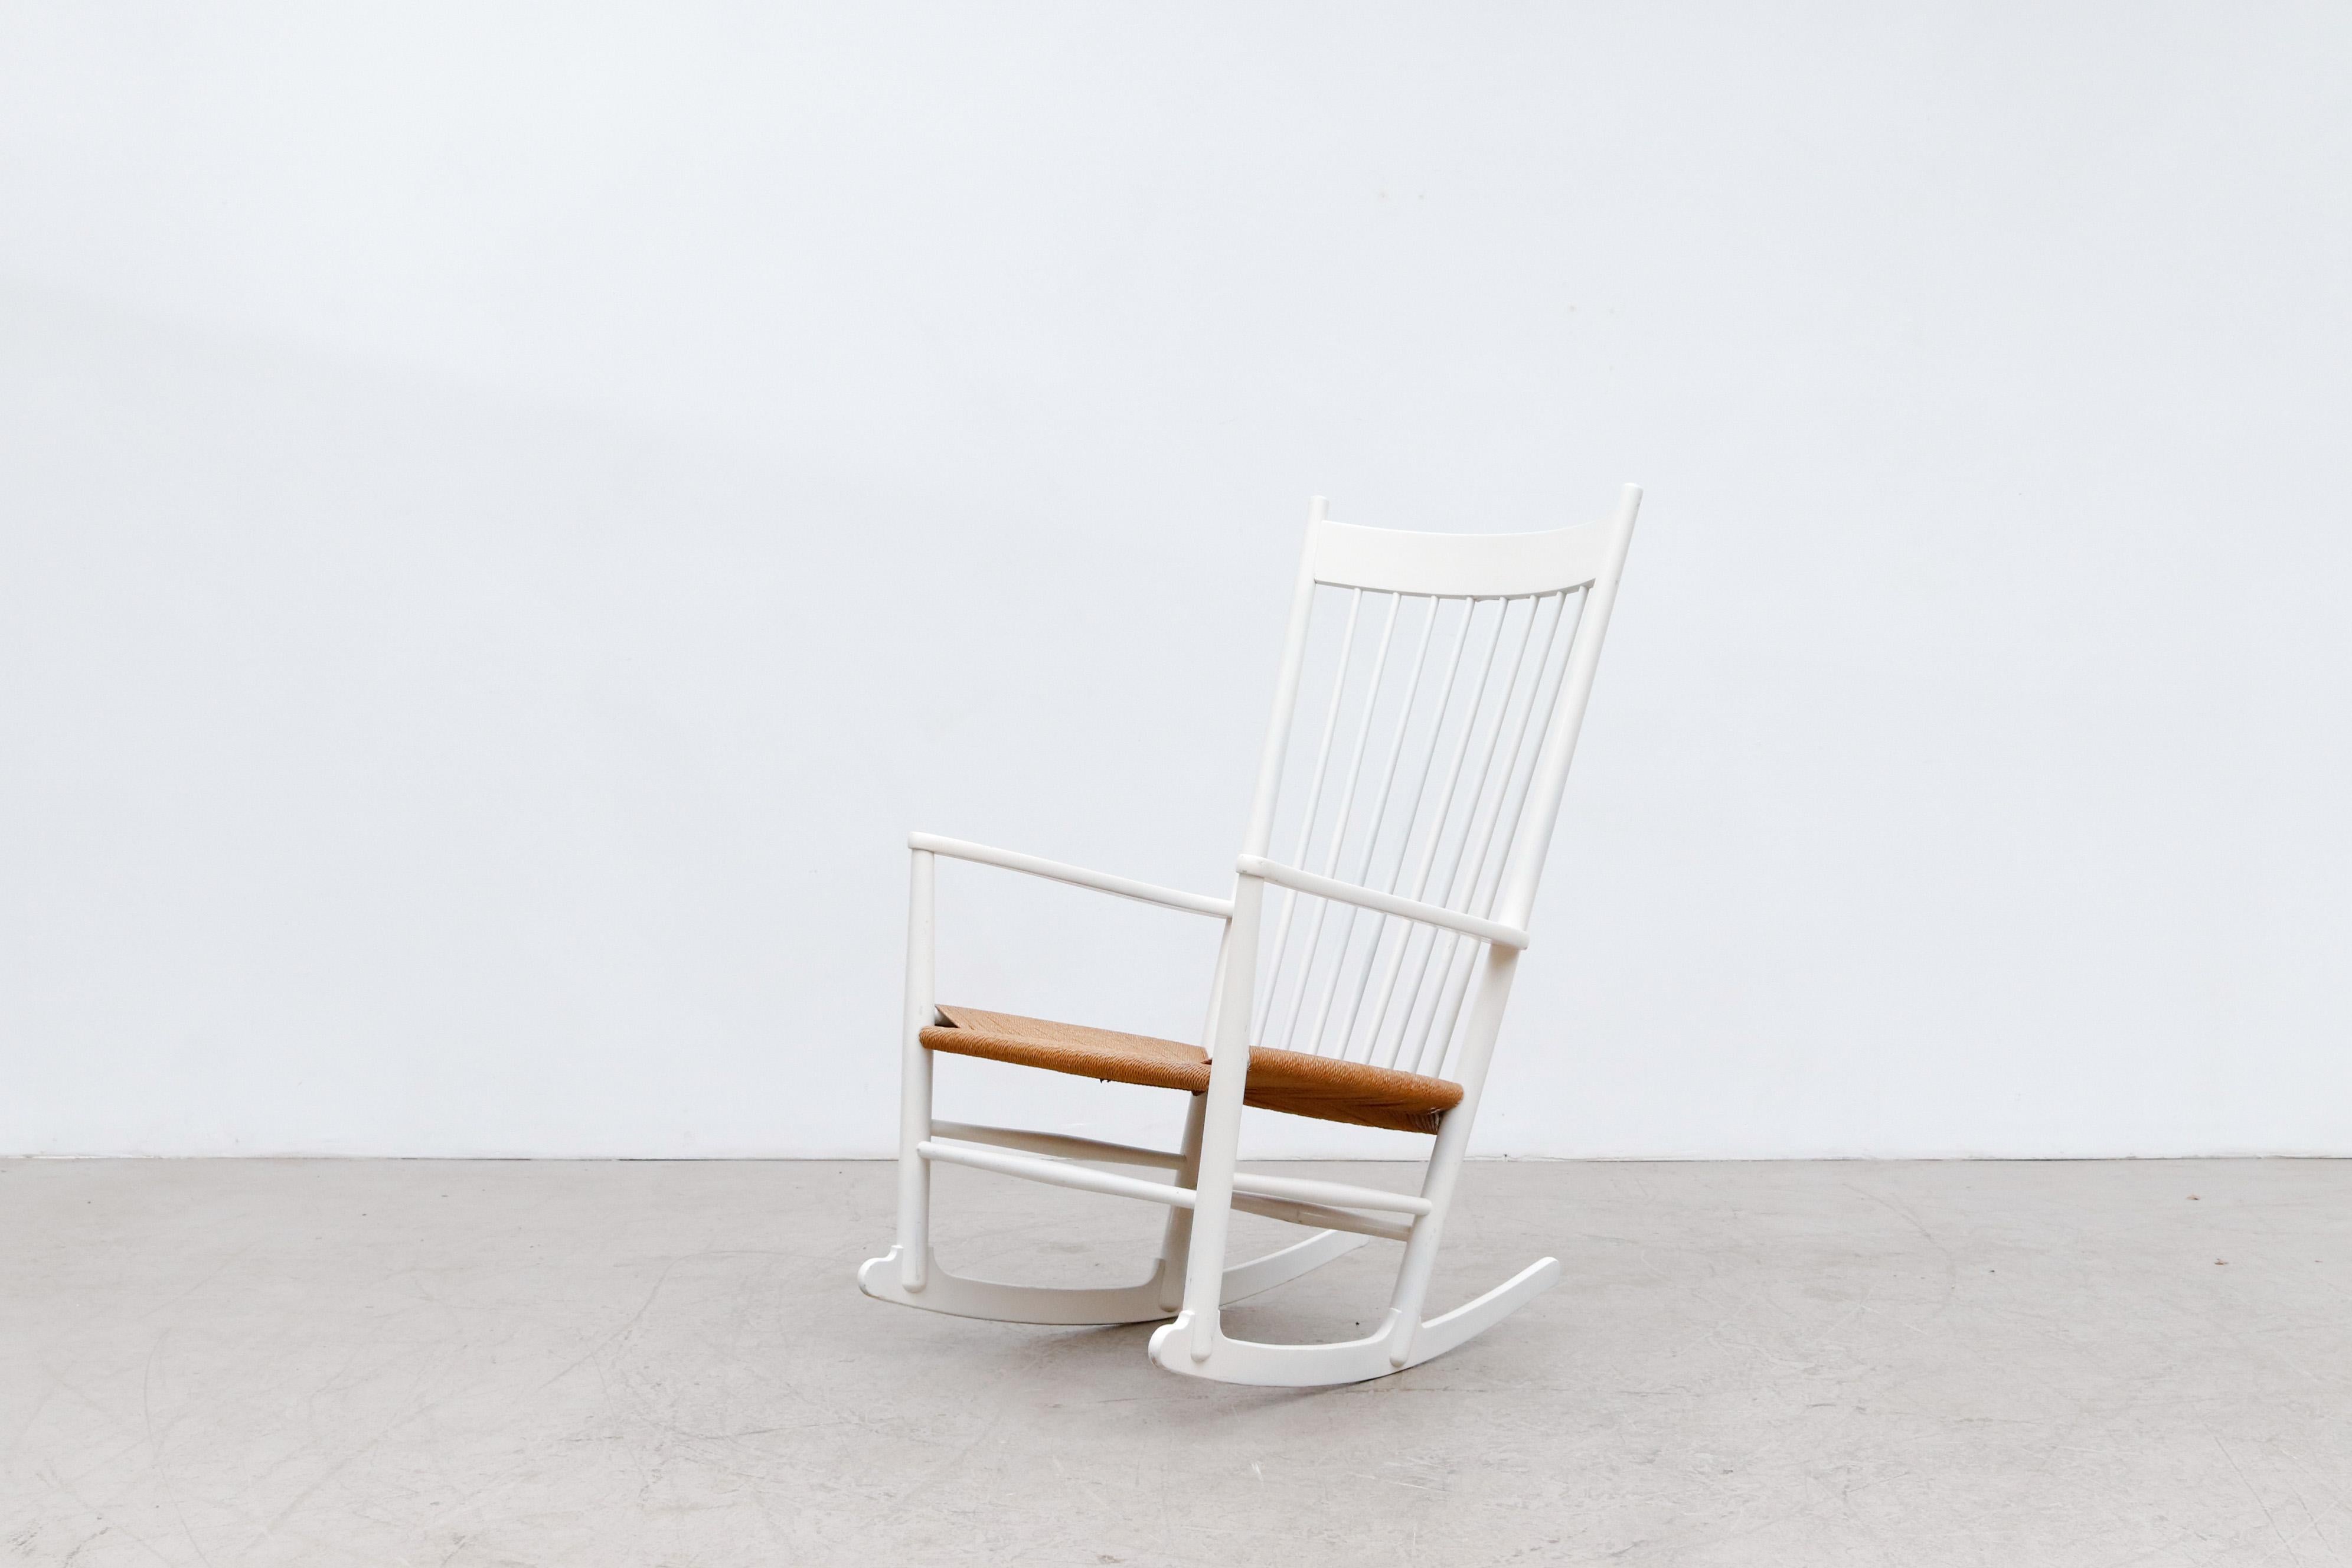 Magnifique fauteuil à bascule laqué blanc du milieu du siècle, conçu par Hans Wegner, avec assise en corde tressée. L'intérêt précoce de Wegner pour le rocking-chair en tant qu'objet de design est illustré par J16, l'une des premières chaises qu'il